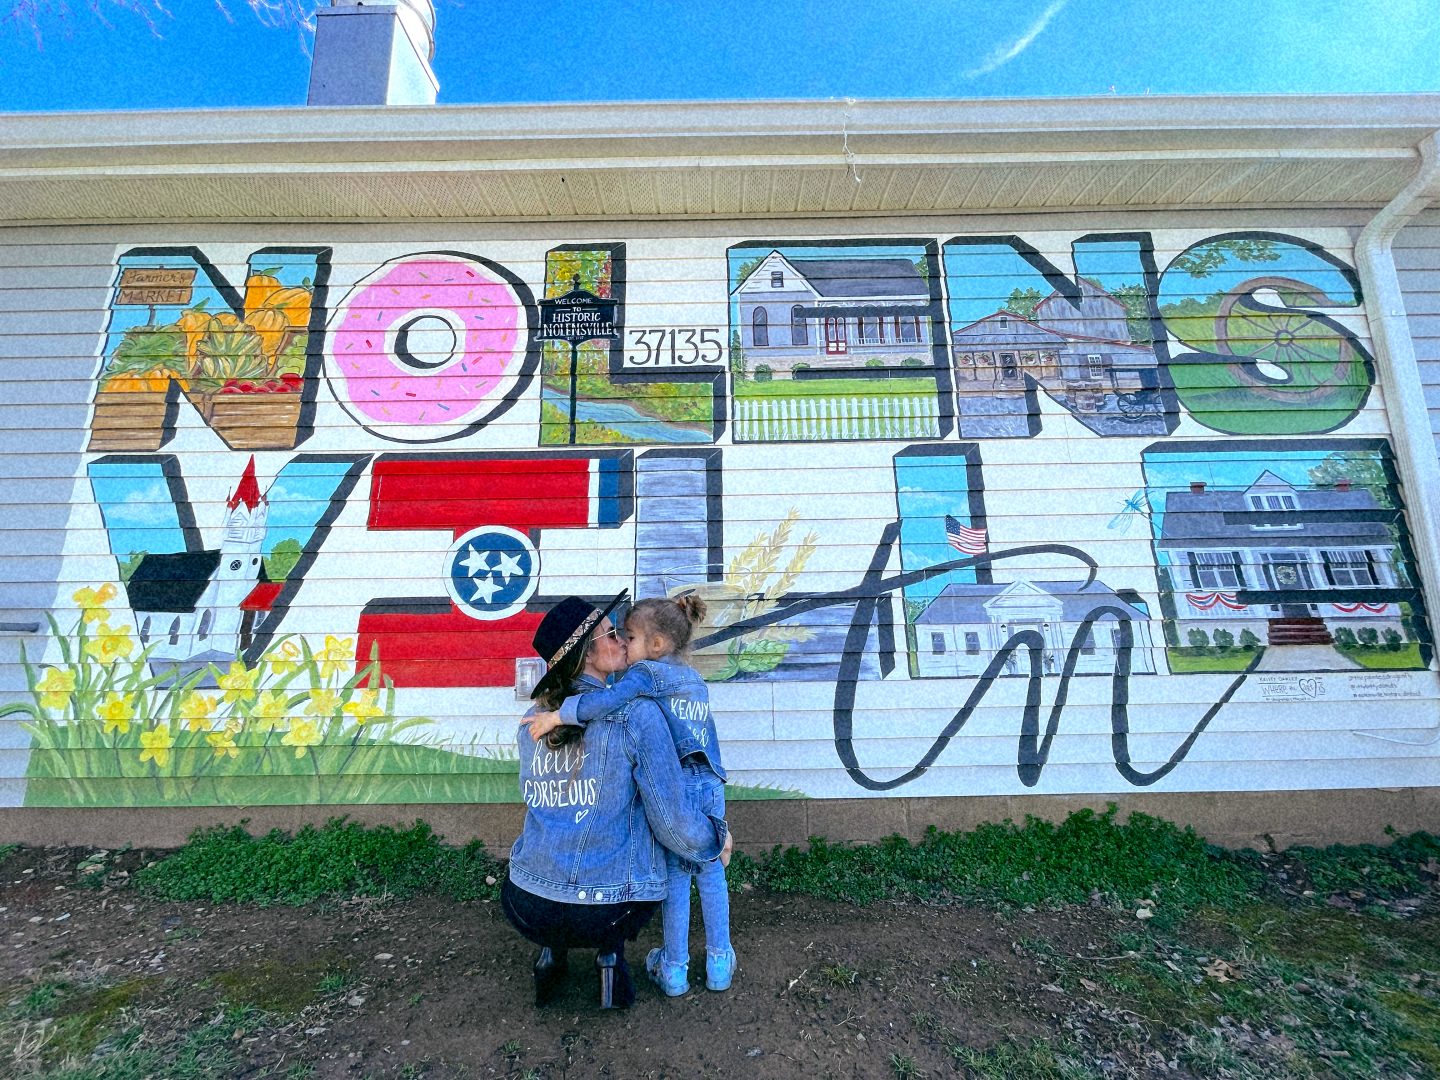 The BEST Instagram Worthy Nashville Murals by travel blogger Angela Lanter 2022